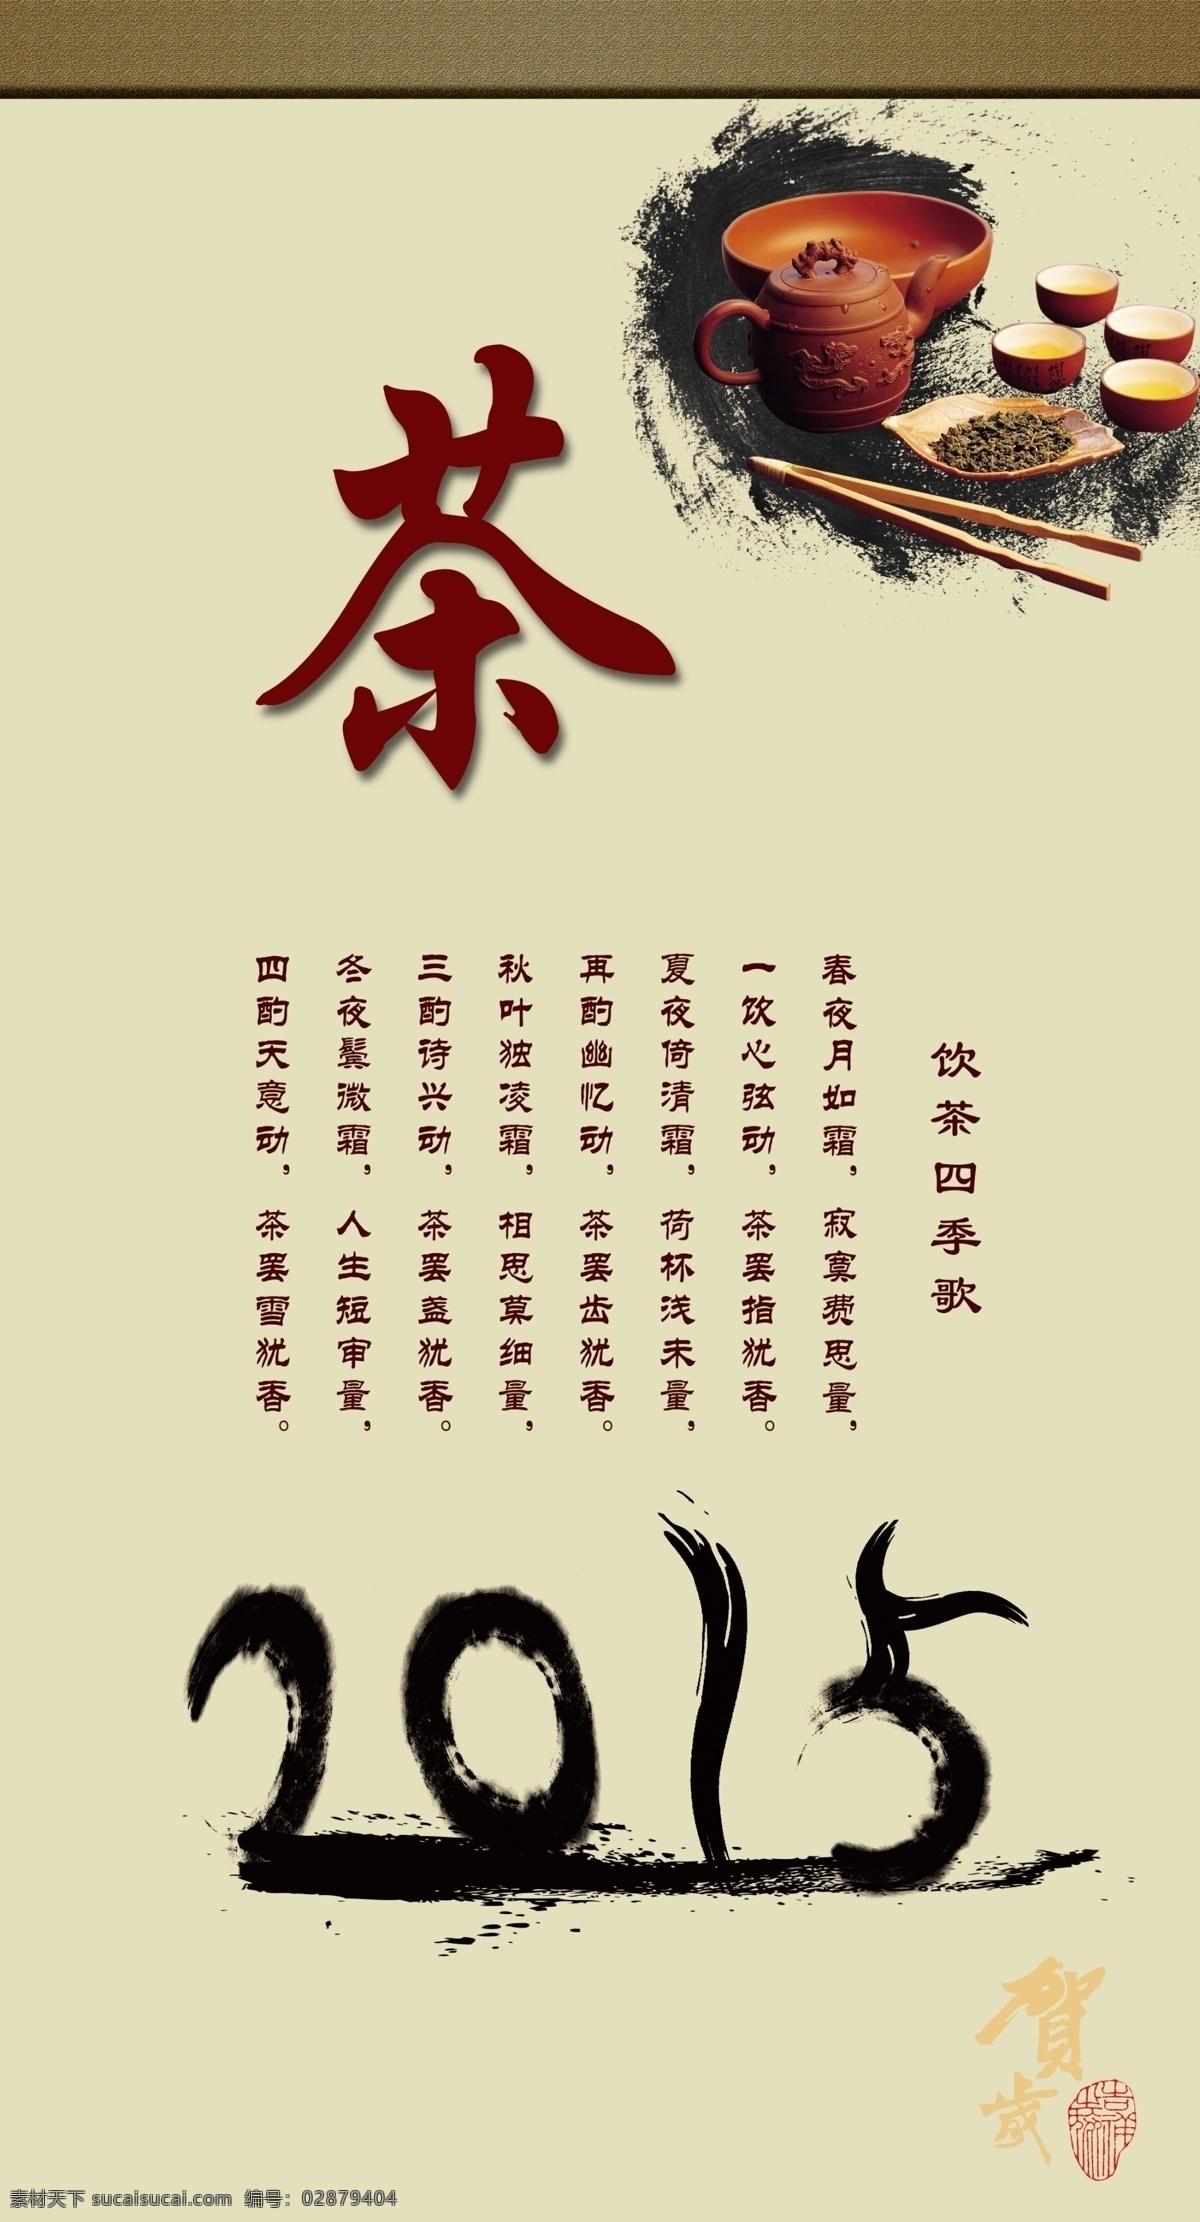 茶语 茶 墨 2015 茶杯 节日庆祝 文化艺术